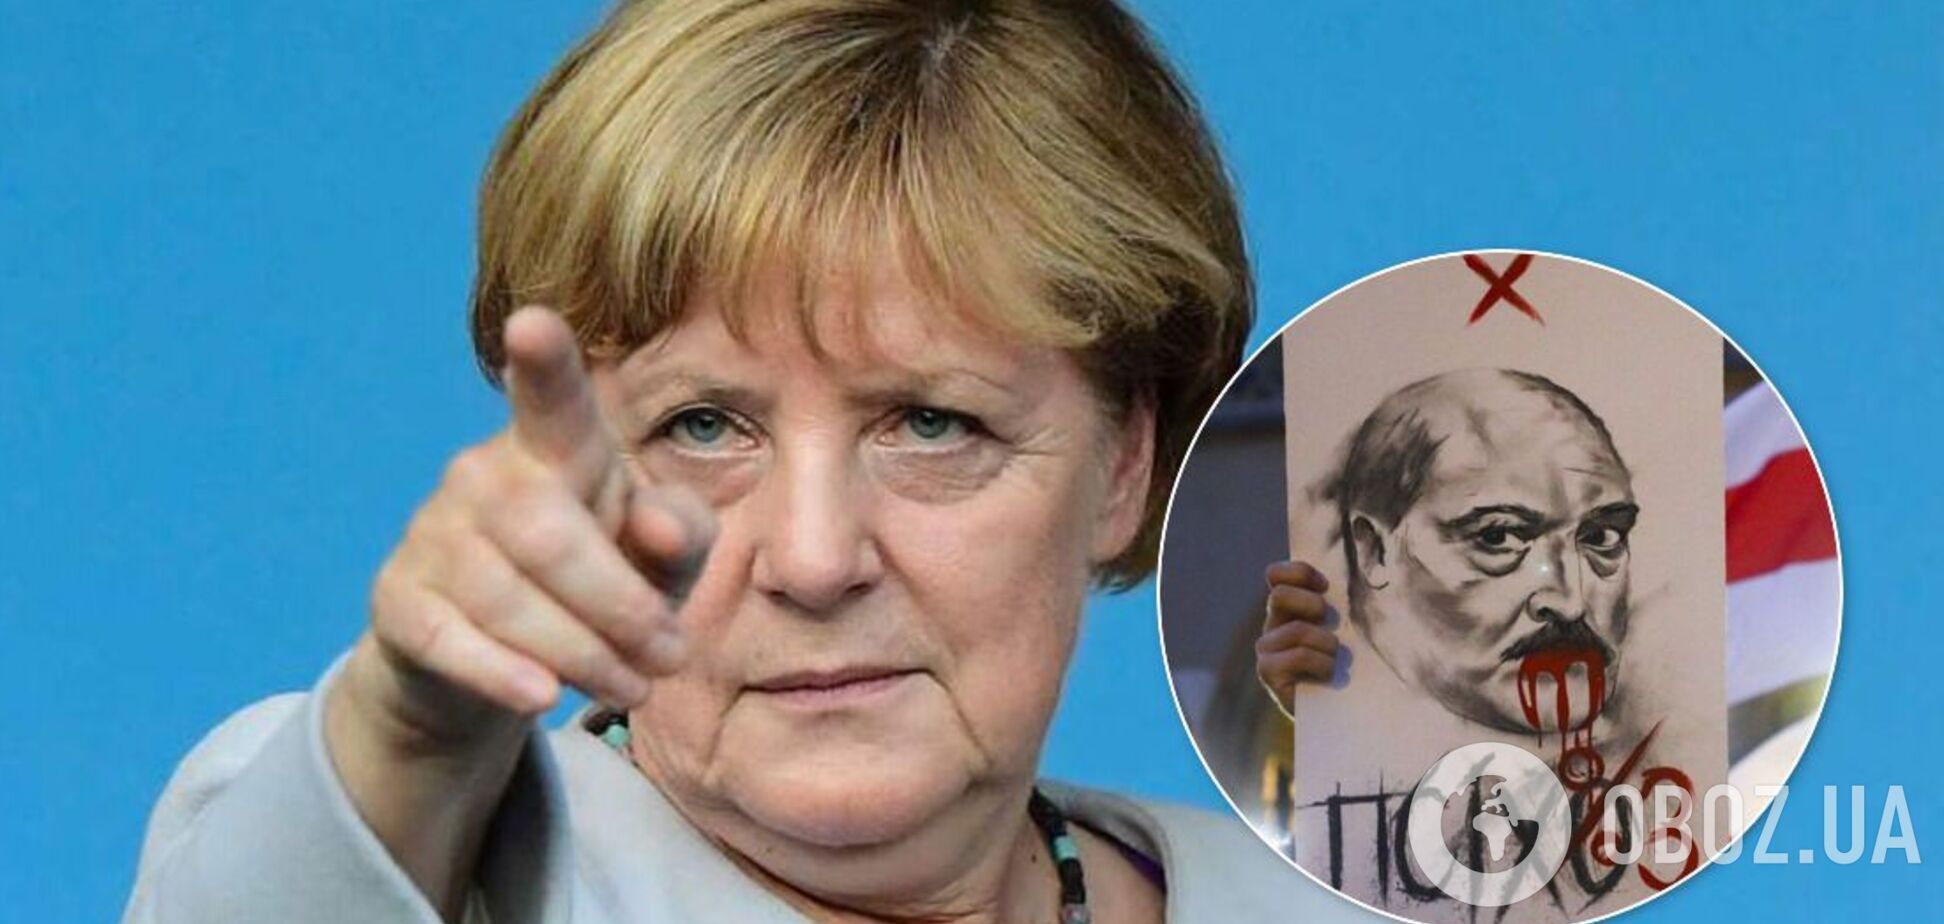 Меркель осудила насилие и потребовала освободить задержанных в Беларуси